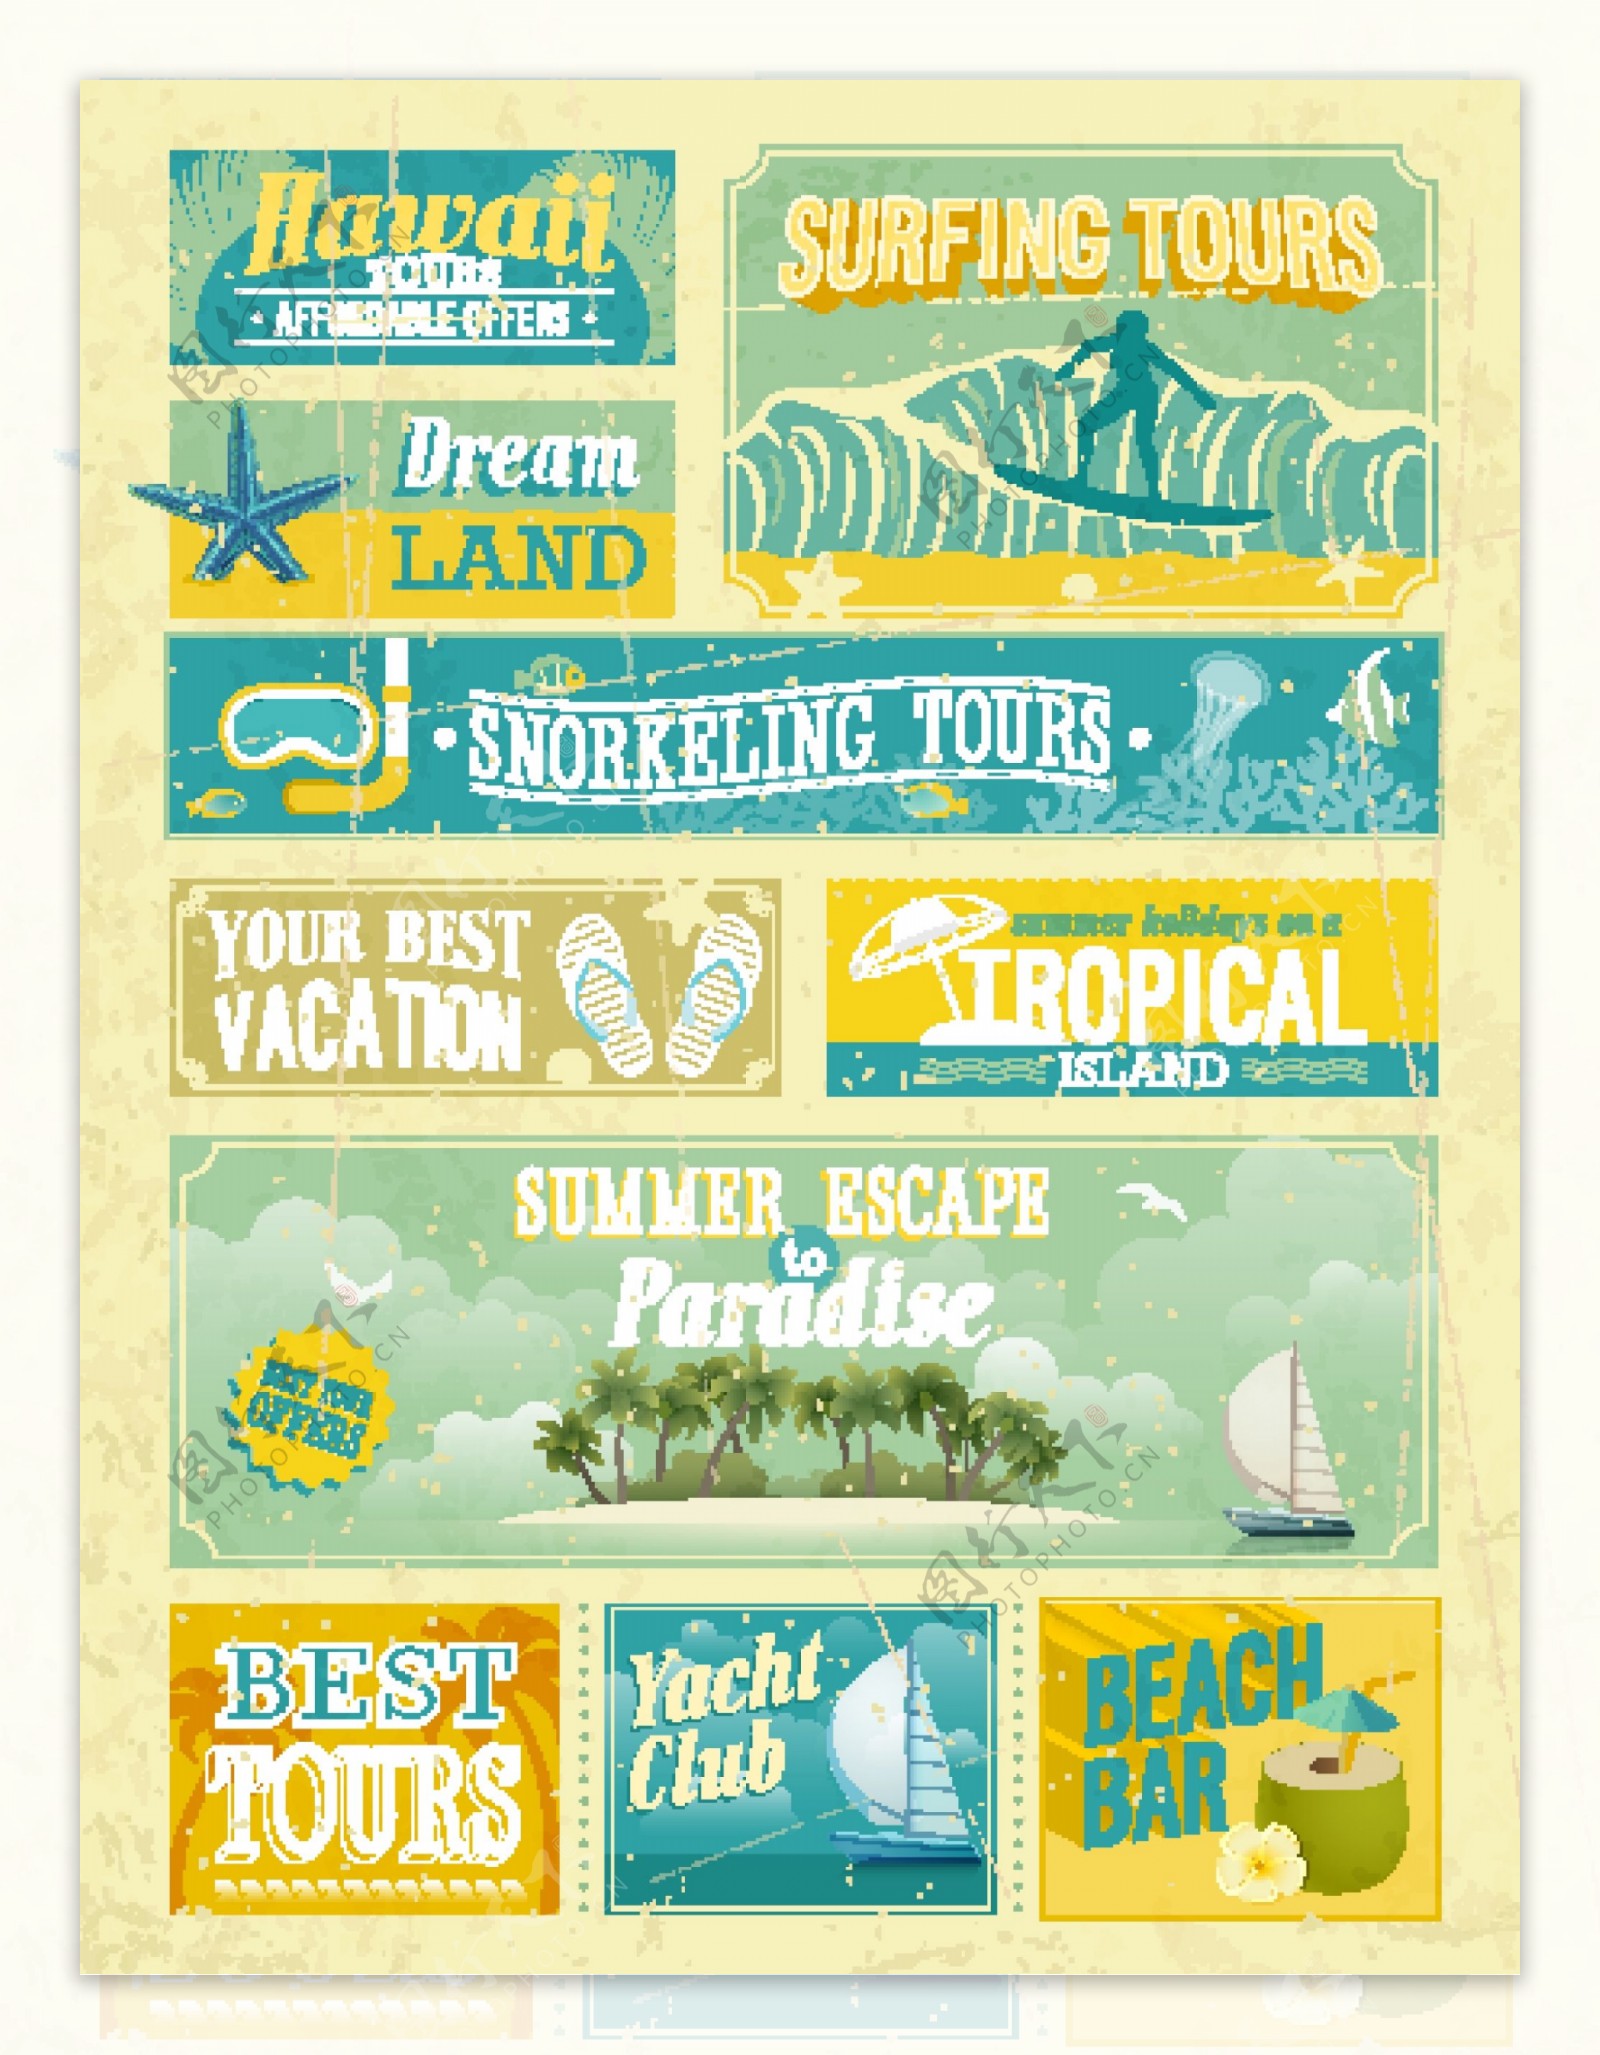 度假海岛宣传海报矢量素材